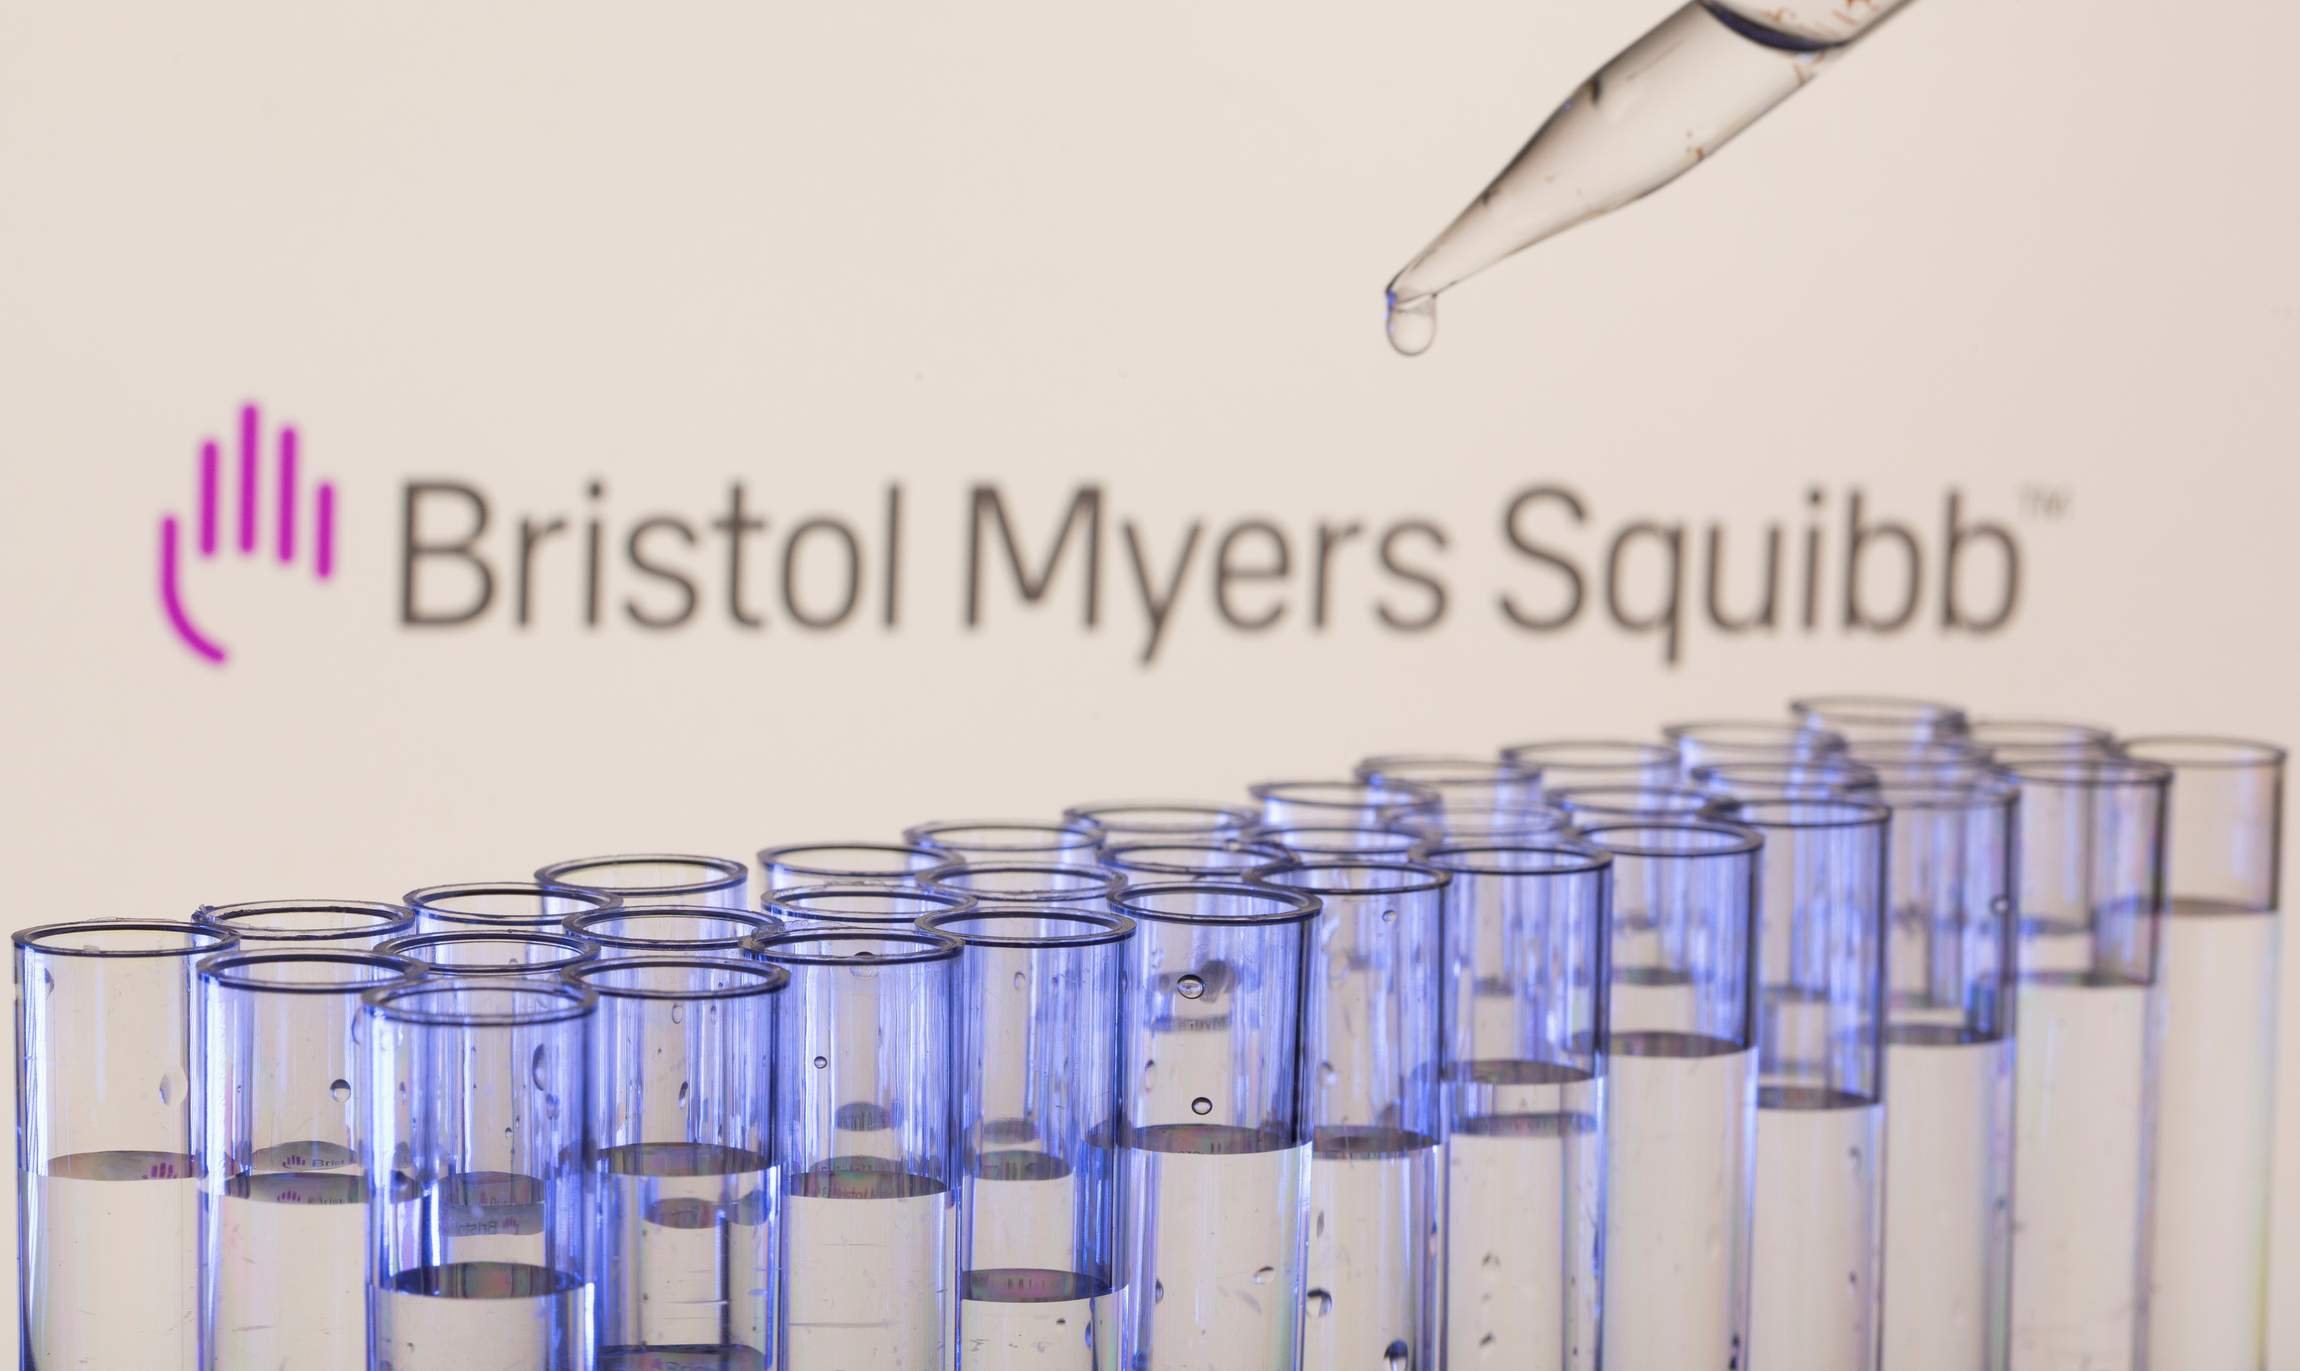  FDA din SUA a aprobat un medicament al Bristol Myers Squibb pentru tratarea melanomului avansat